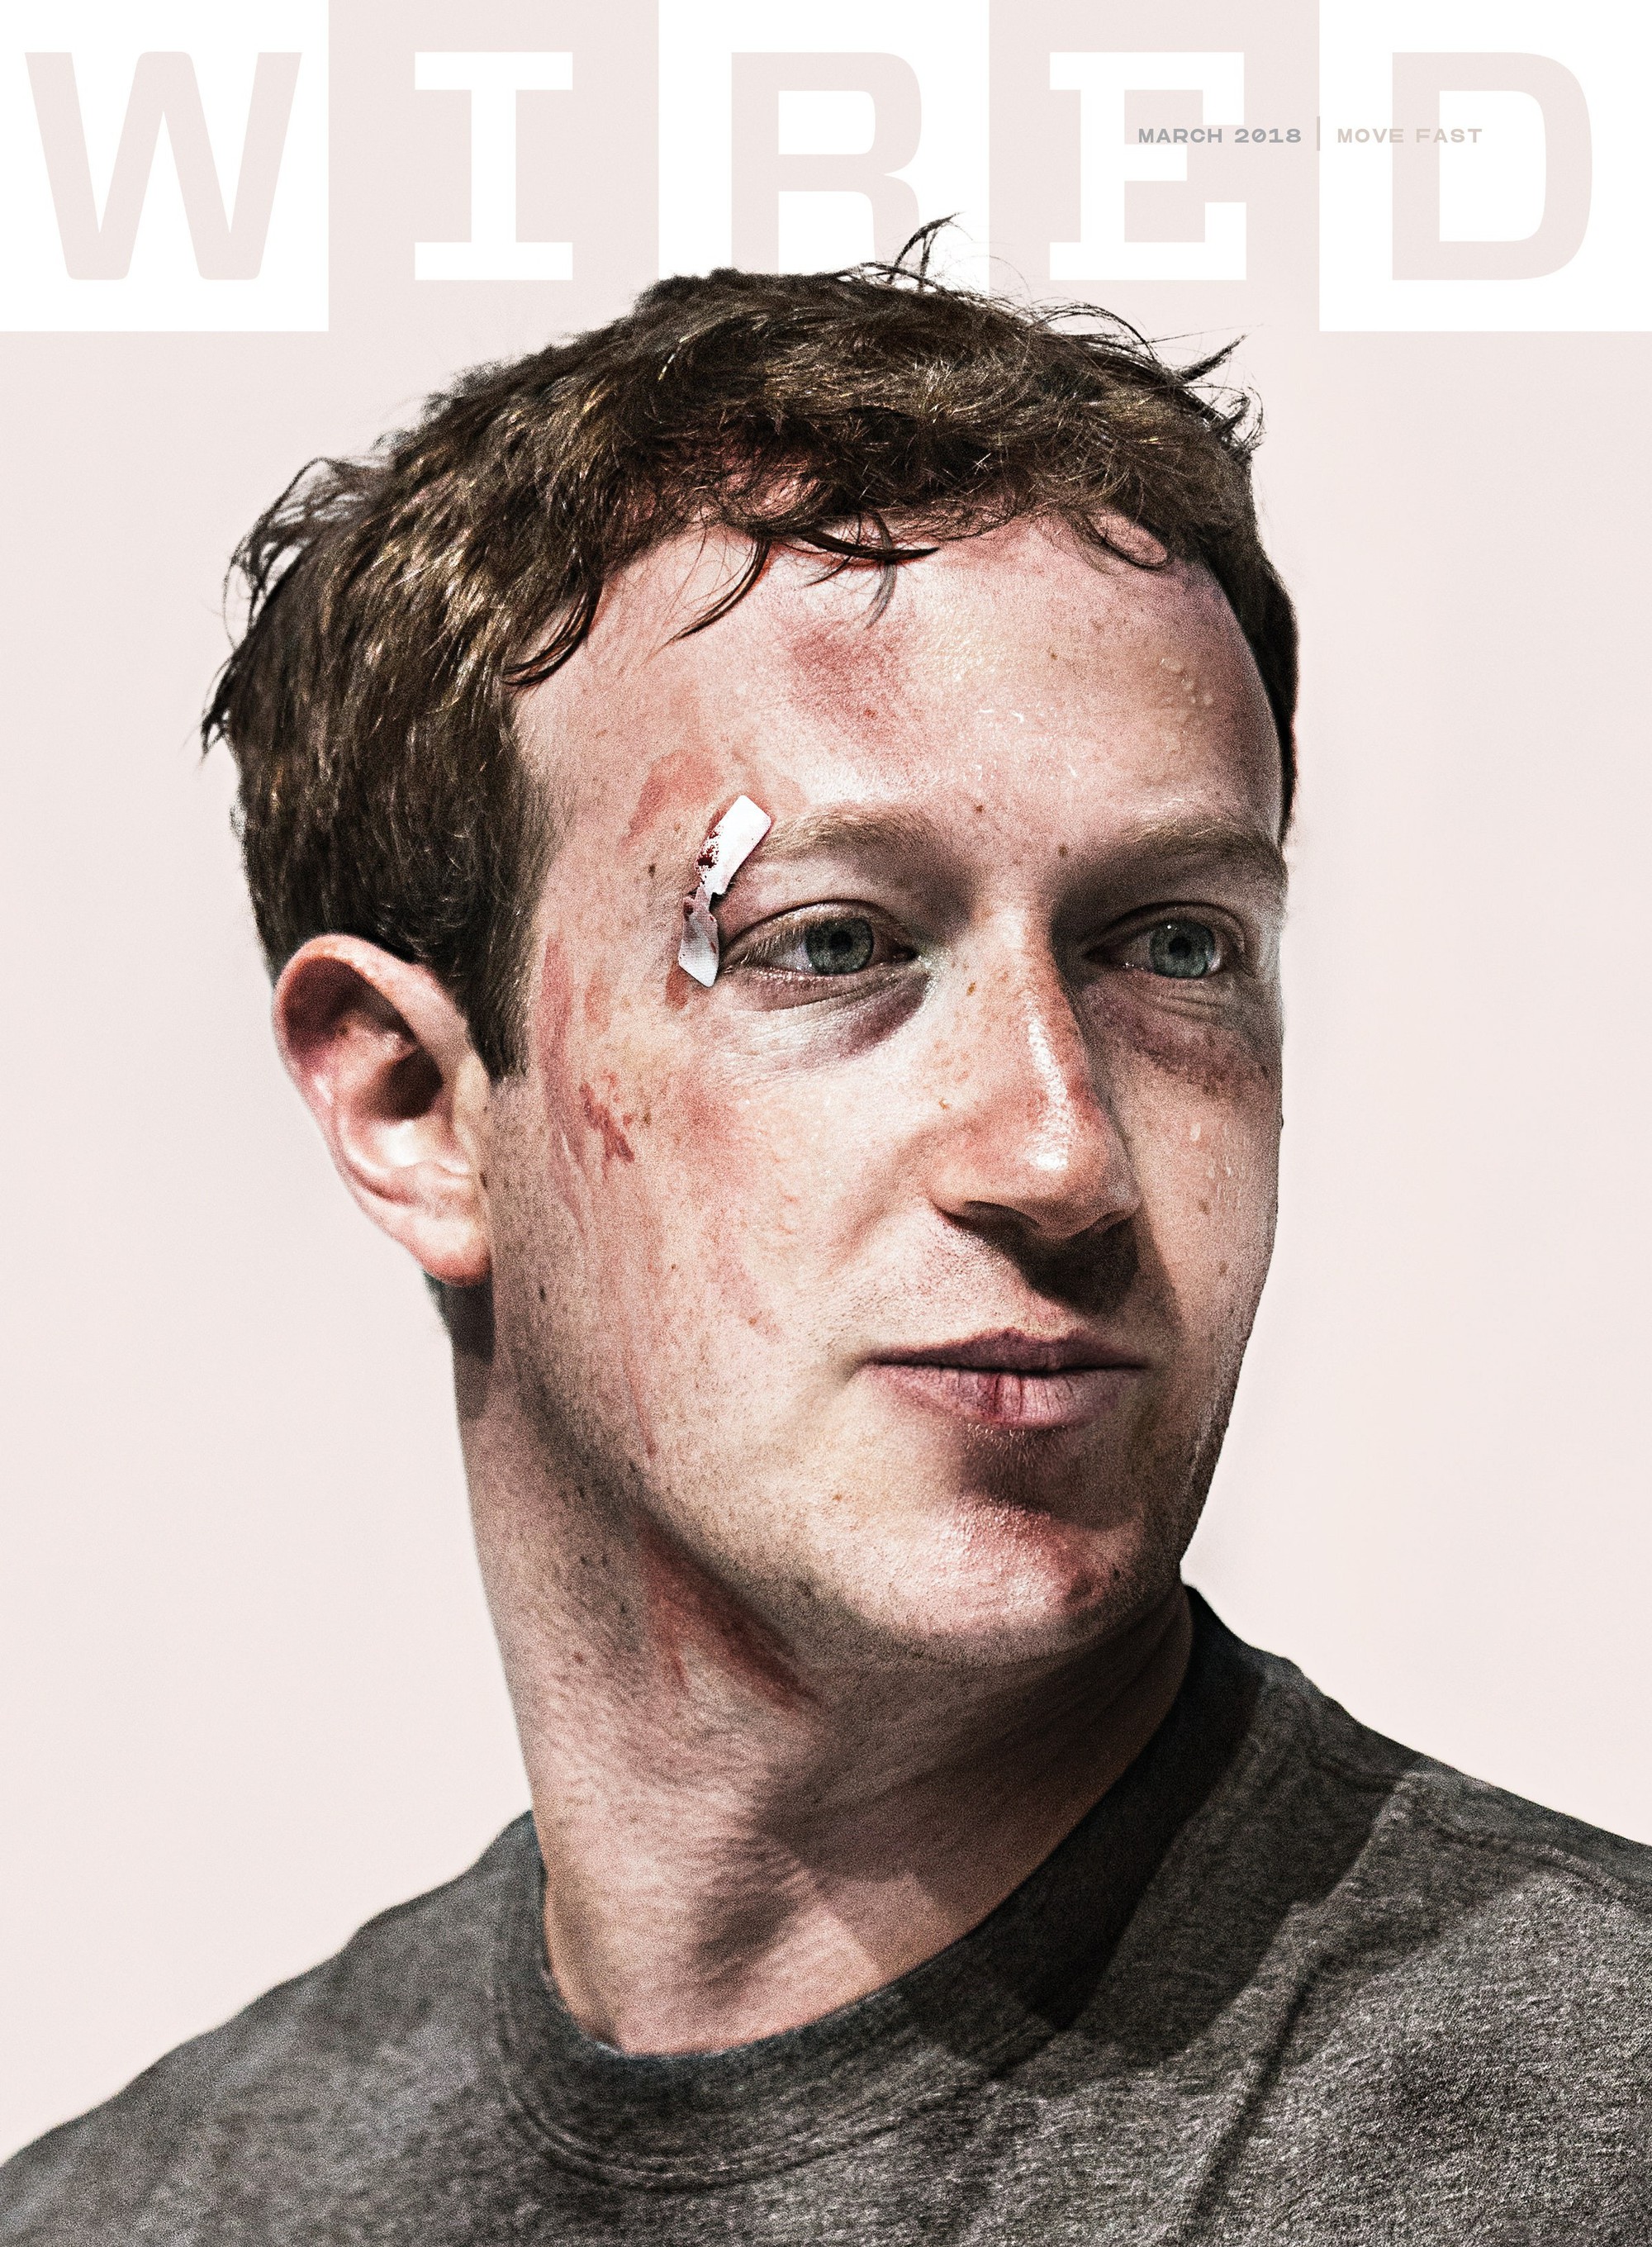 Bão sa thải lần 2 trong giới công nghệ bắt đầu: Học theo bẫy ăn xổi 1.000 tỷ USD của Mark Zuckerberg, các công ty không tập trung sáng tạo mà chỉ lo đuổi việc, hàng chục nghìn lao động sẽ sớm mất việc- Ảnh 4.